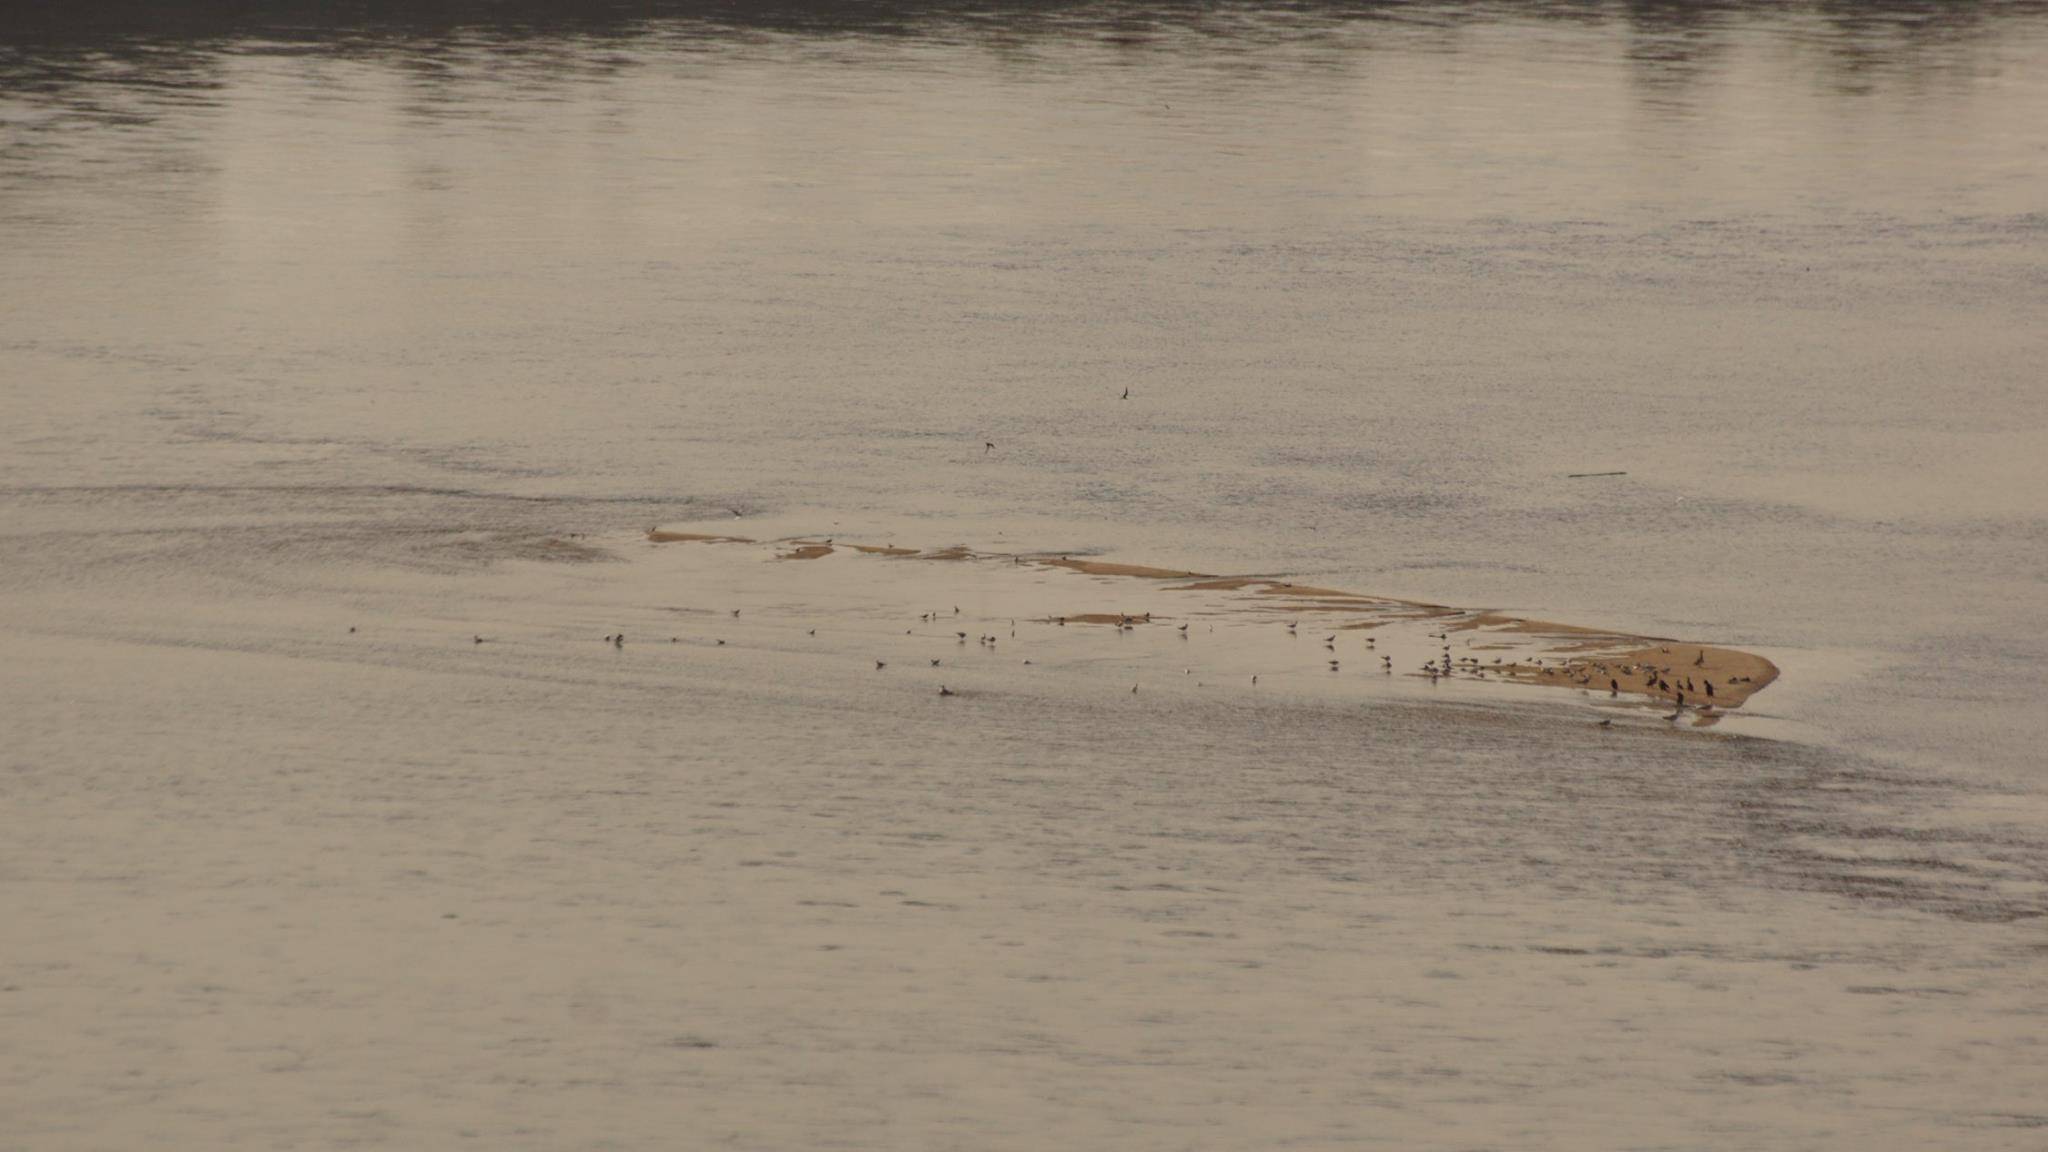 Grafika do artykułu Zrzut wody we Włocławku zniszczył przynajmniej 133 gniazda ściśle chronionych gatunków ptaków. A Wody Polskie swoje: "ptaki nie zginęły"